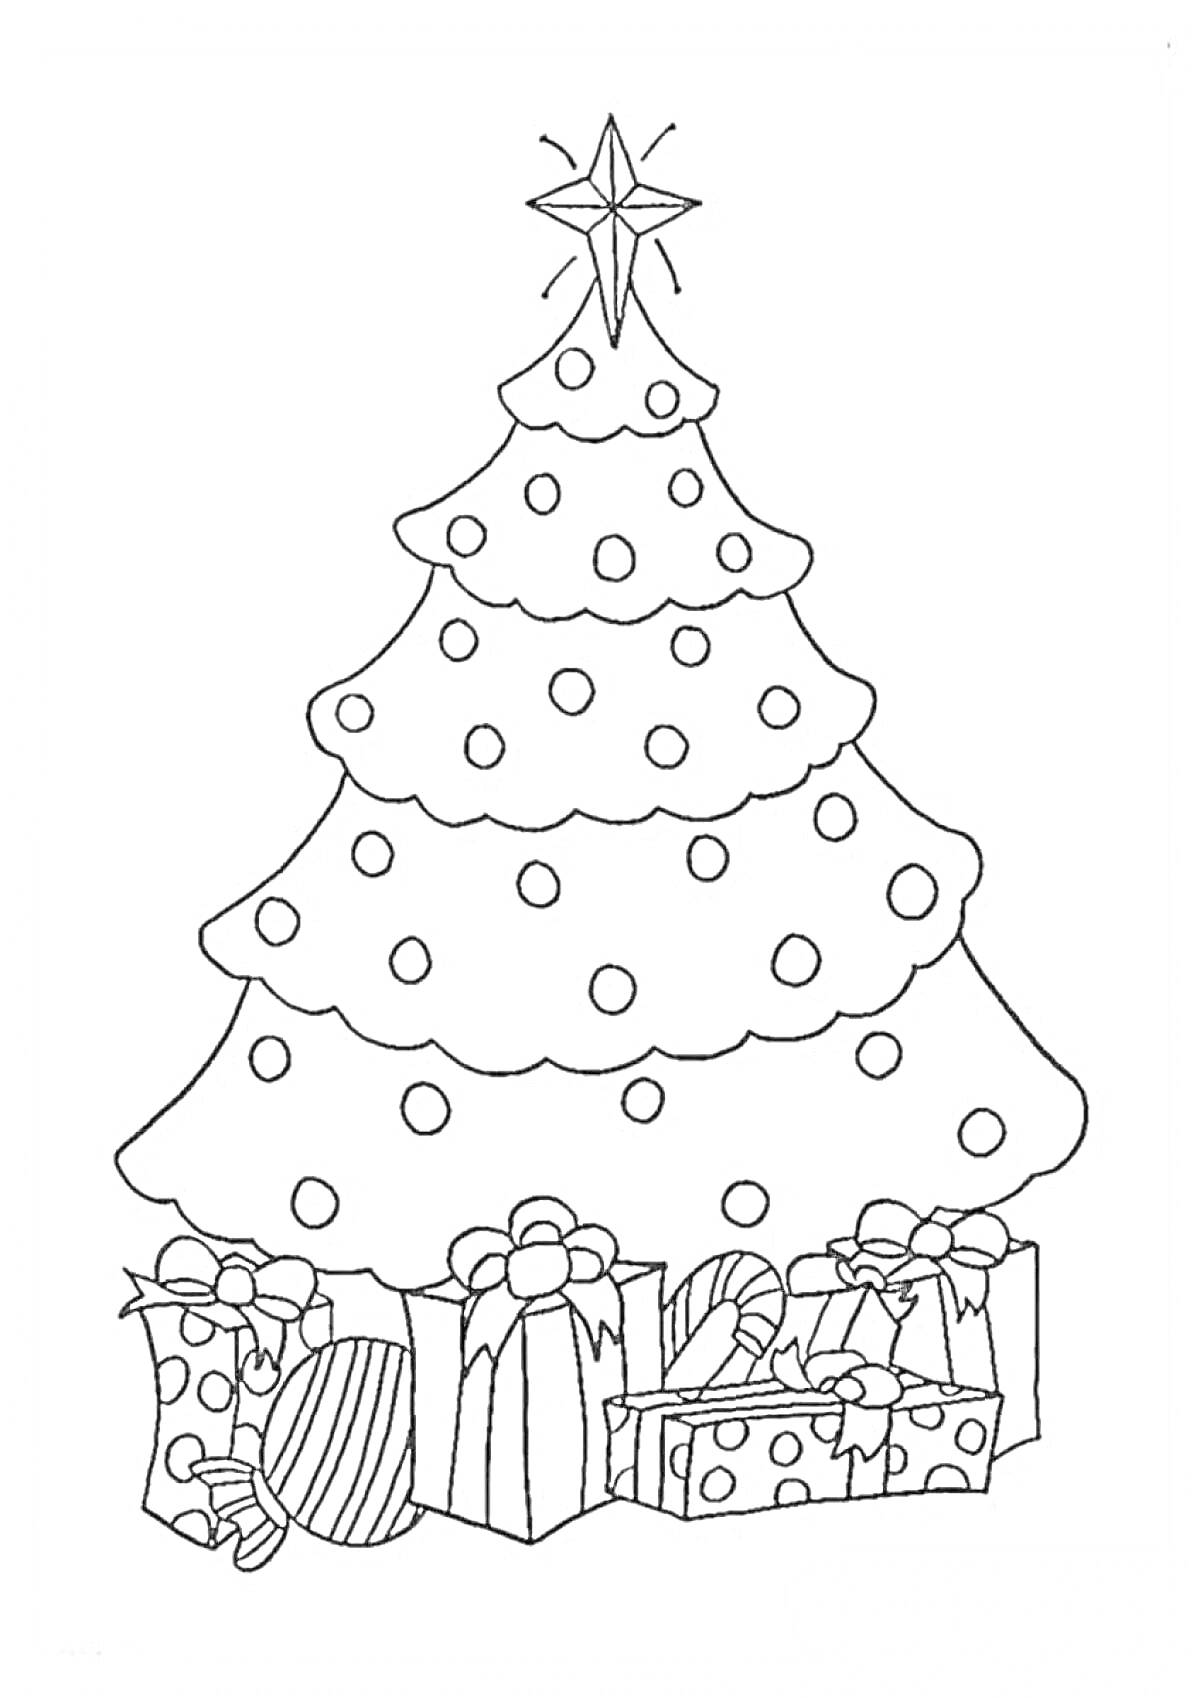 Раскраска Рождественская елка со звездой на верхушке, шарами и подарками